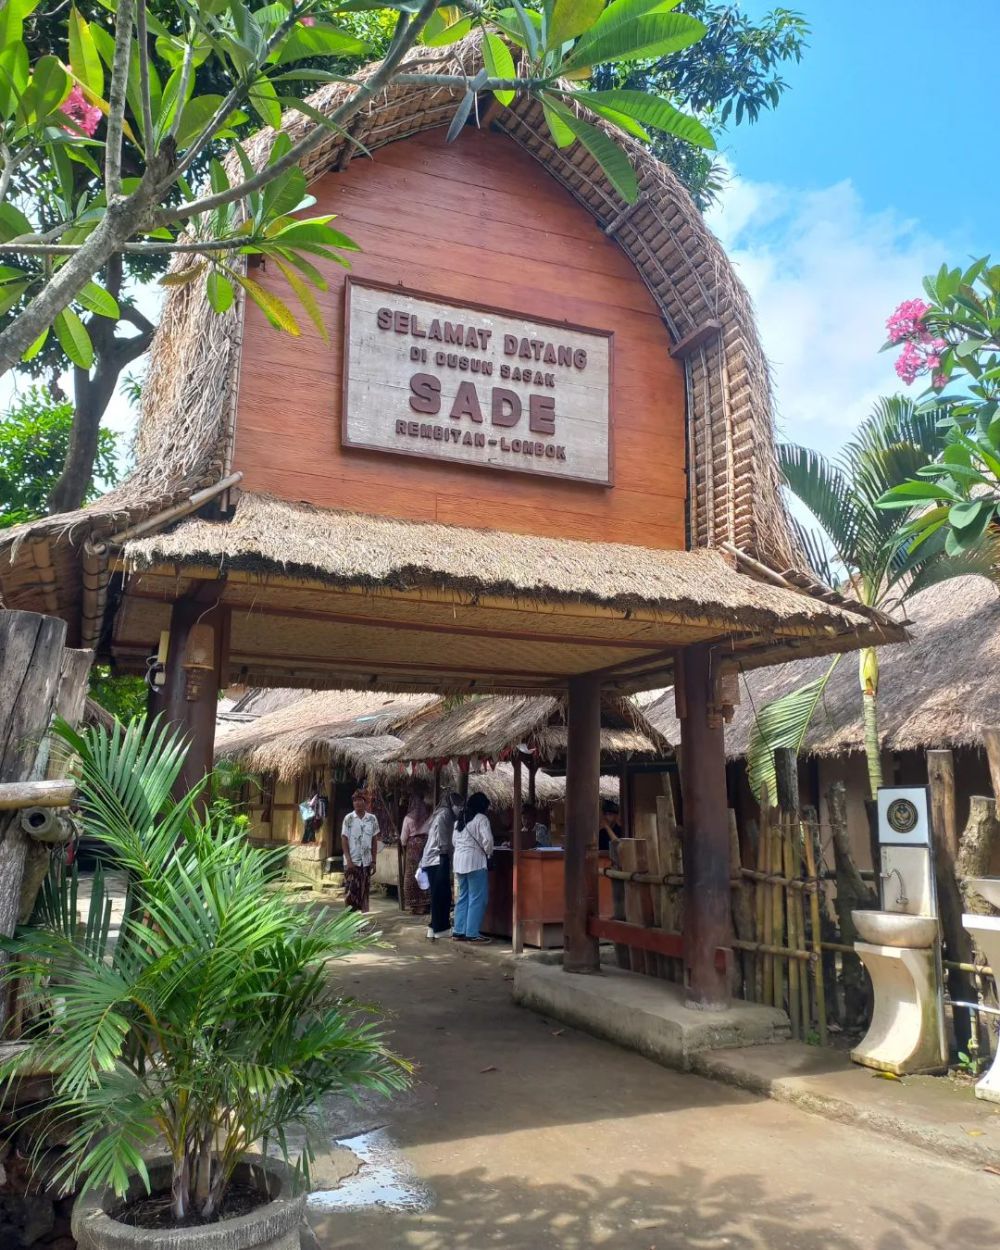 7 Fakta Unik dan Menarik tentang Desa Sade di Lombok